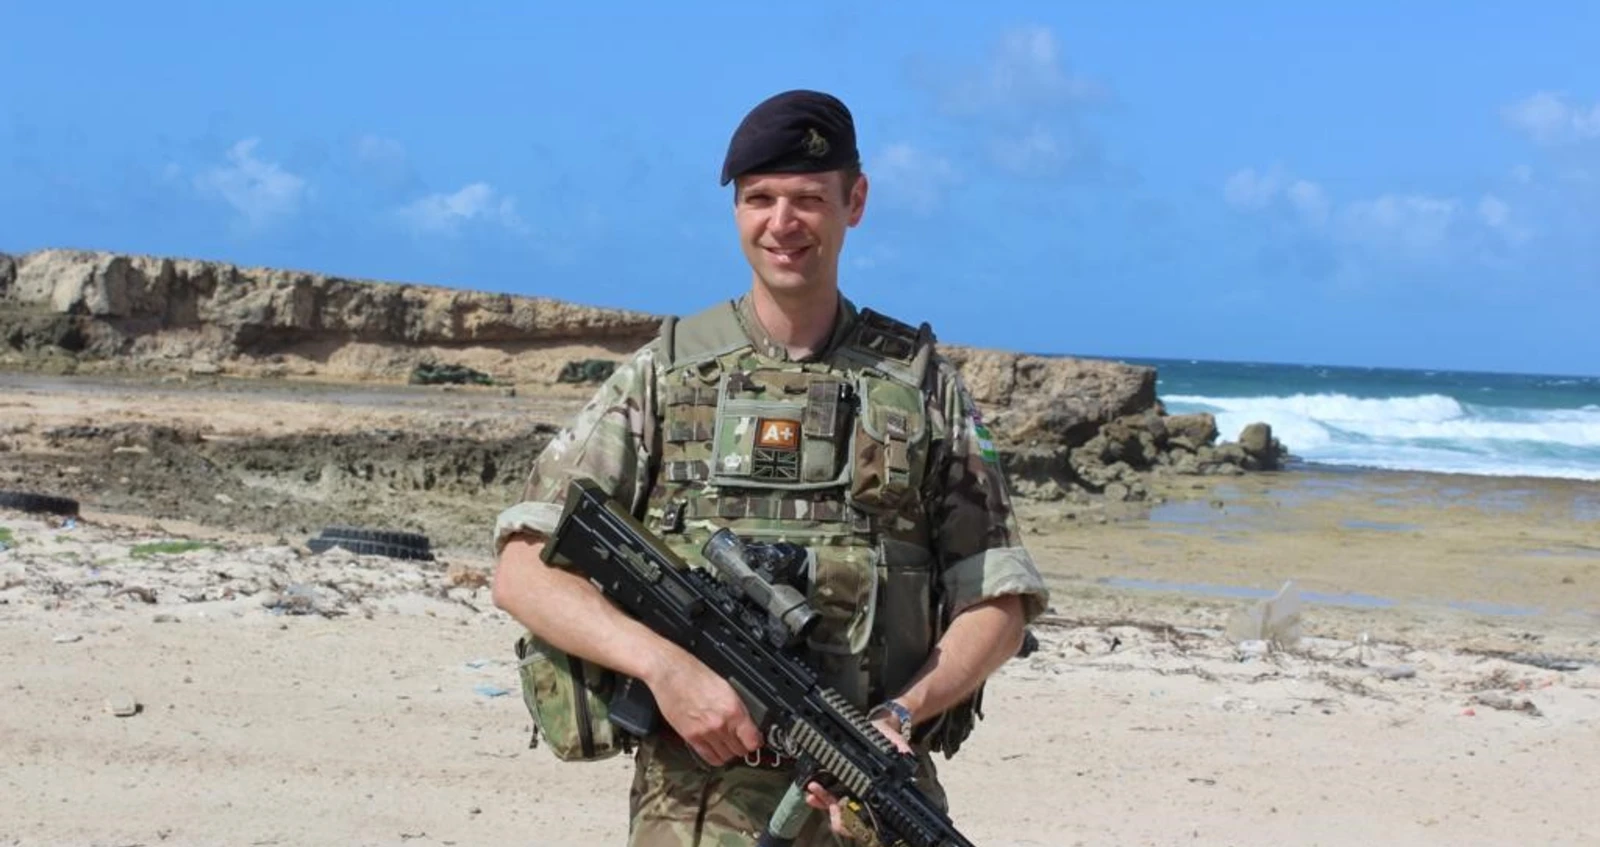 Steve Little on tour in Somalia